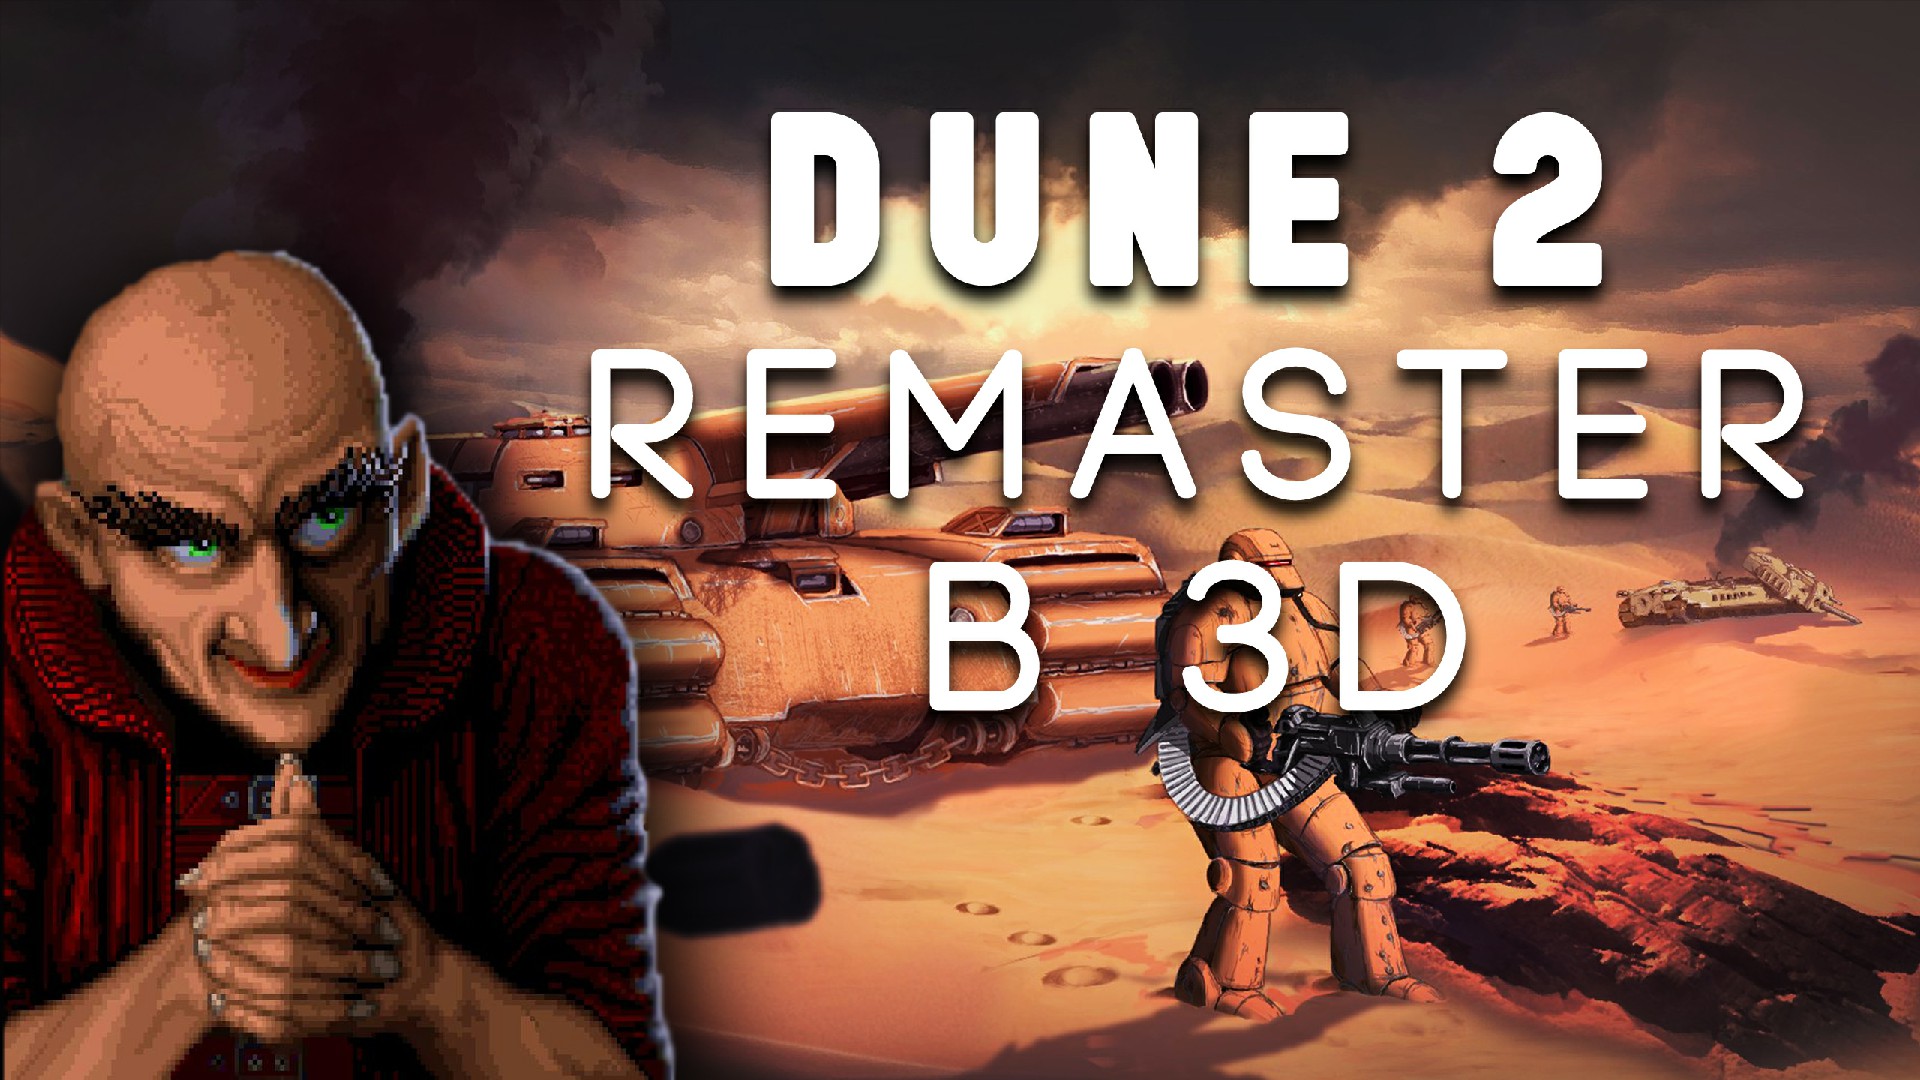 Dune 2 remaster в 3D. Обновлённая сборка проекта, ремастера оригинальной сеговской Дюны!